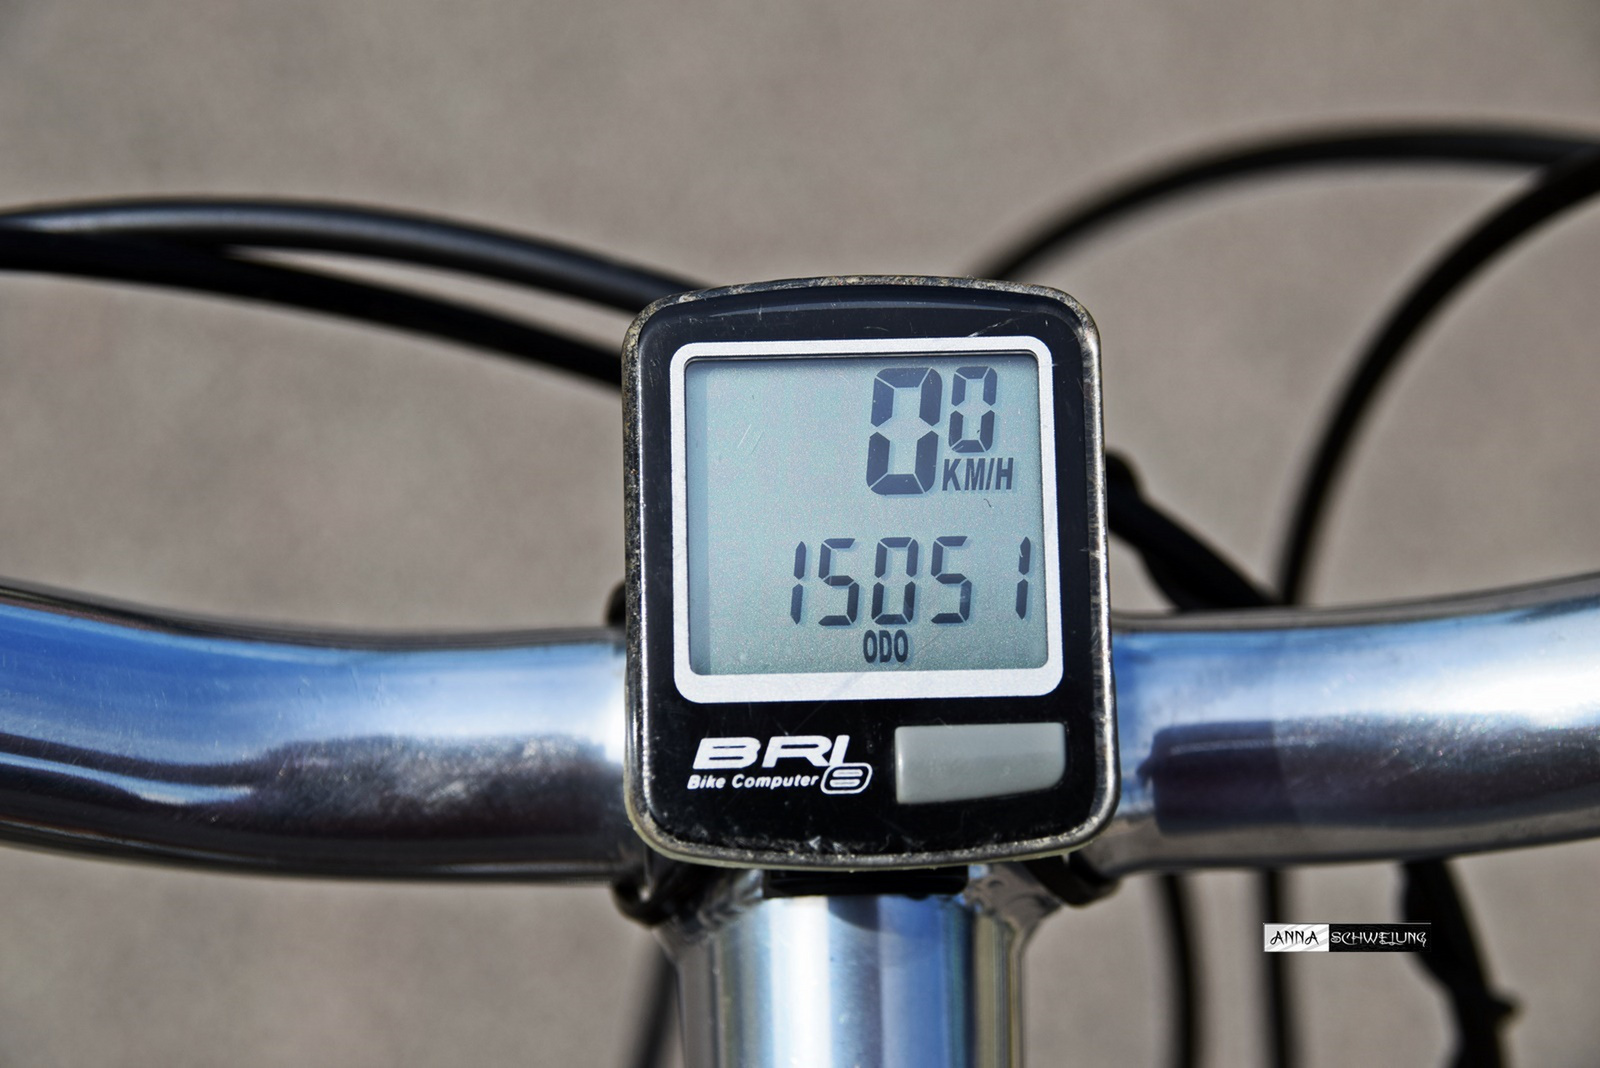 Biciklis palindromszám...